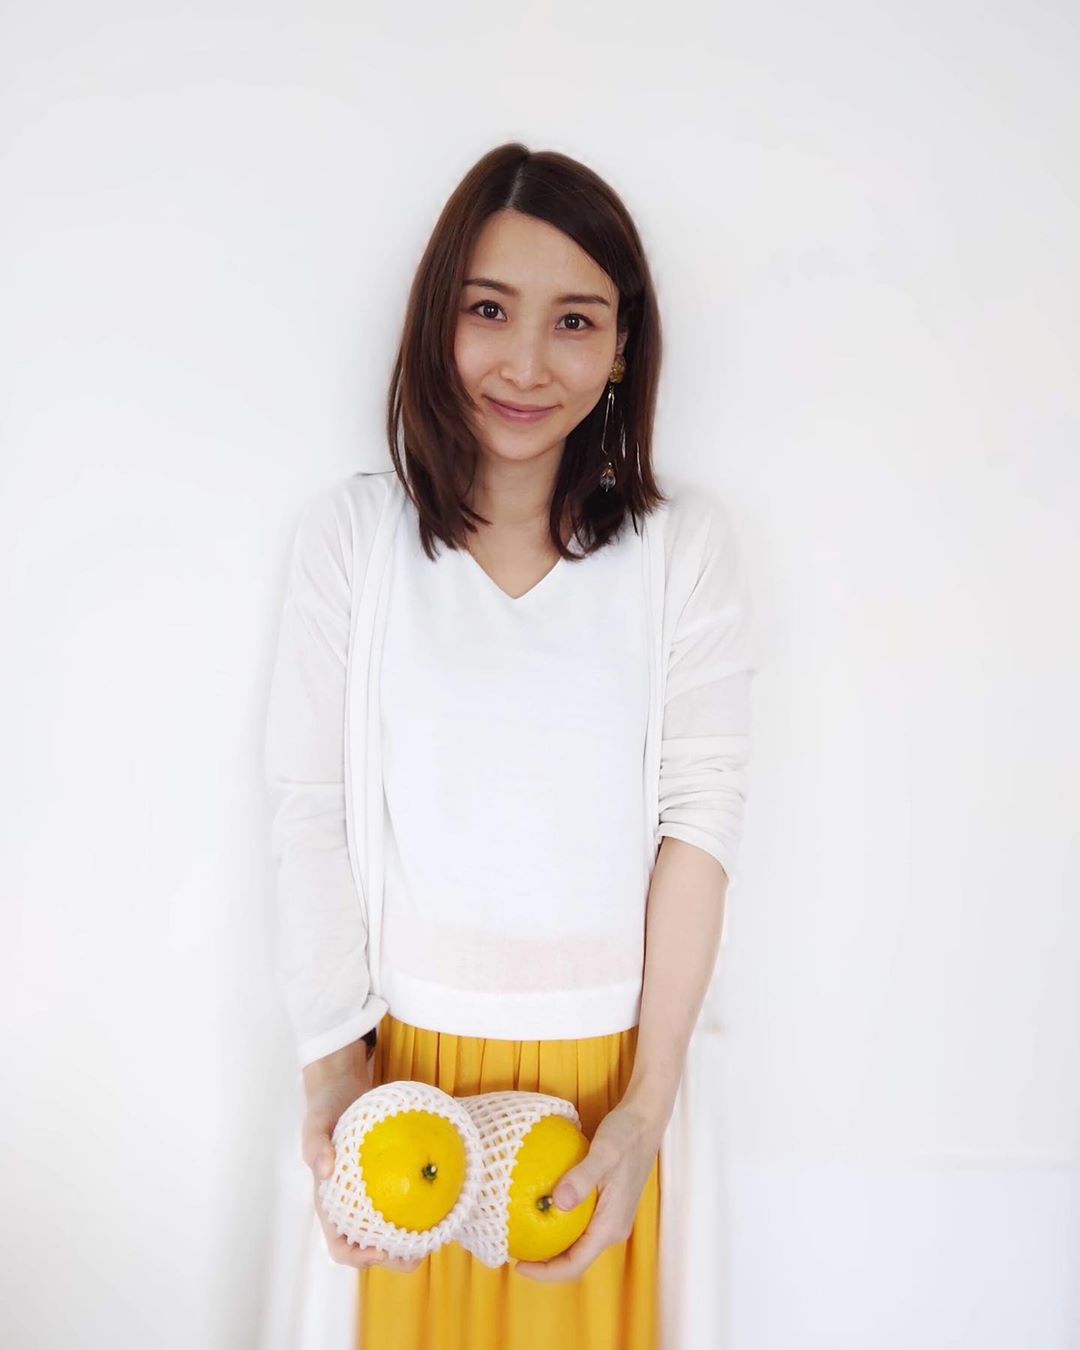 きしむ 指定する 発表する 妊娠 洋服 Seitai Kawagoe Jp